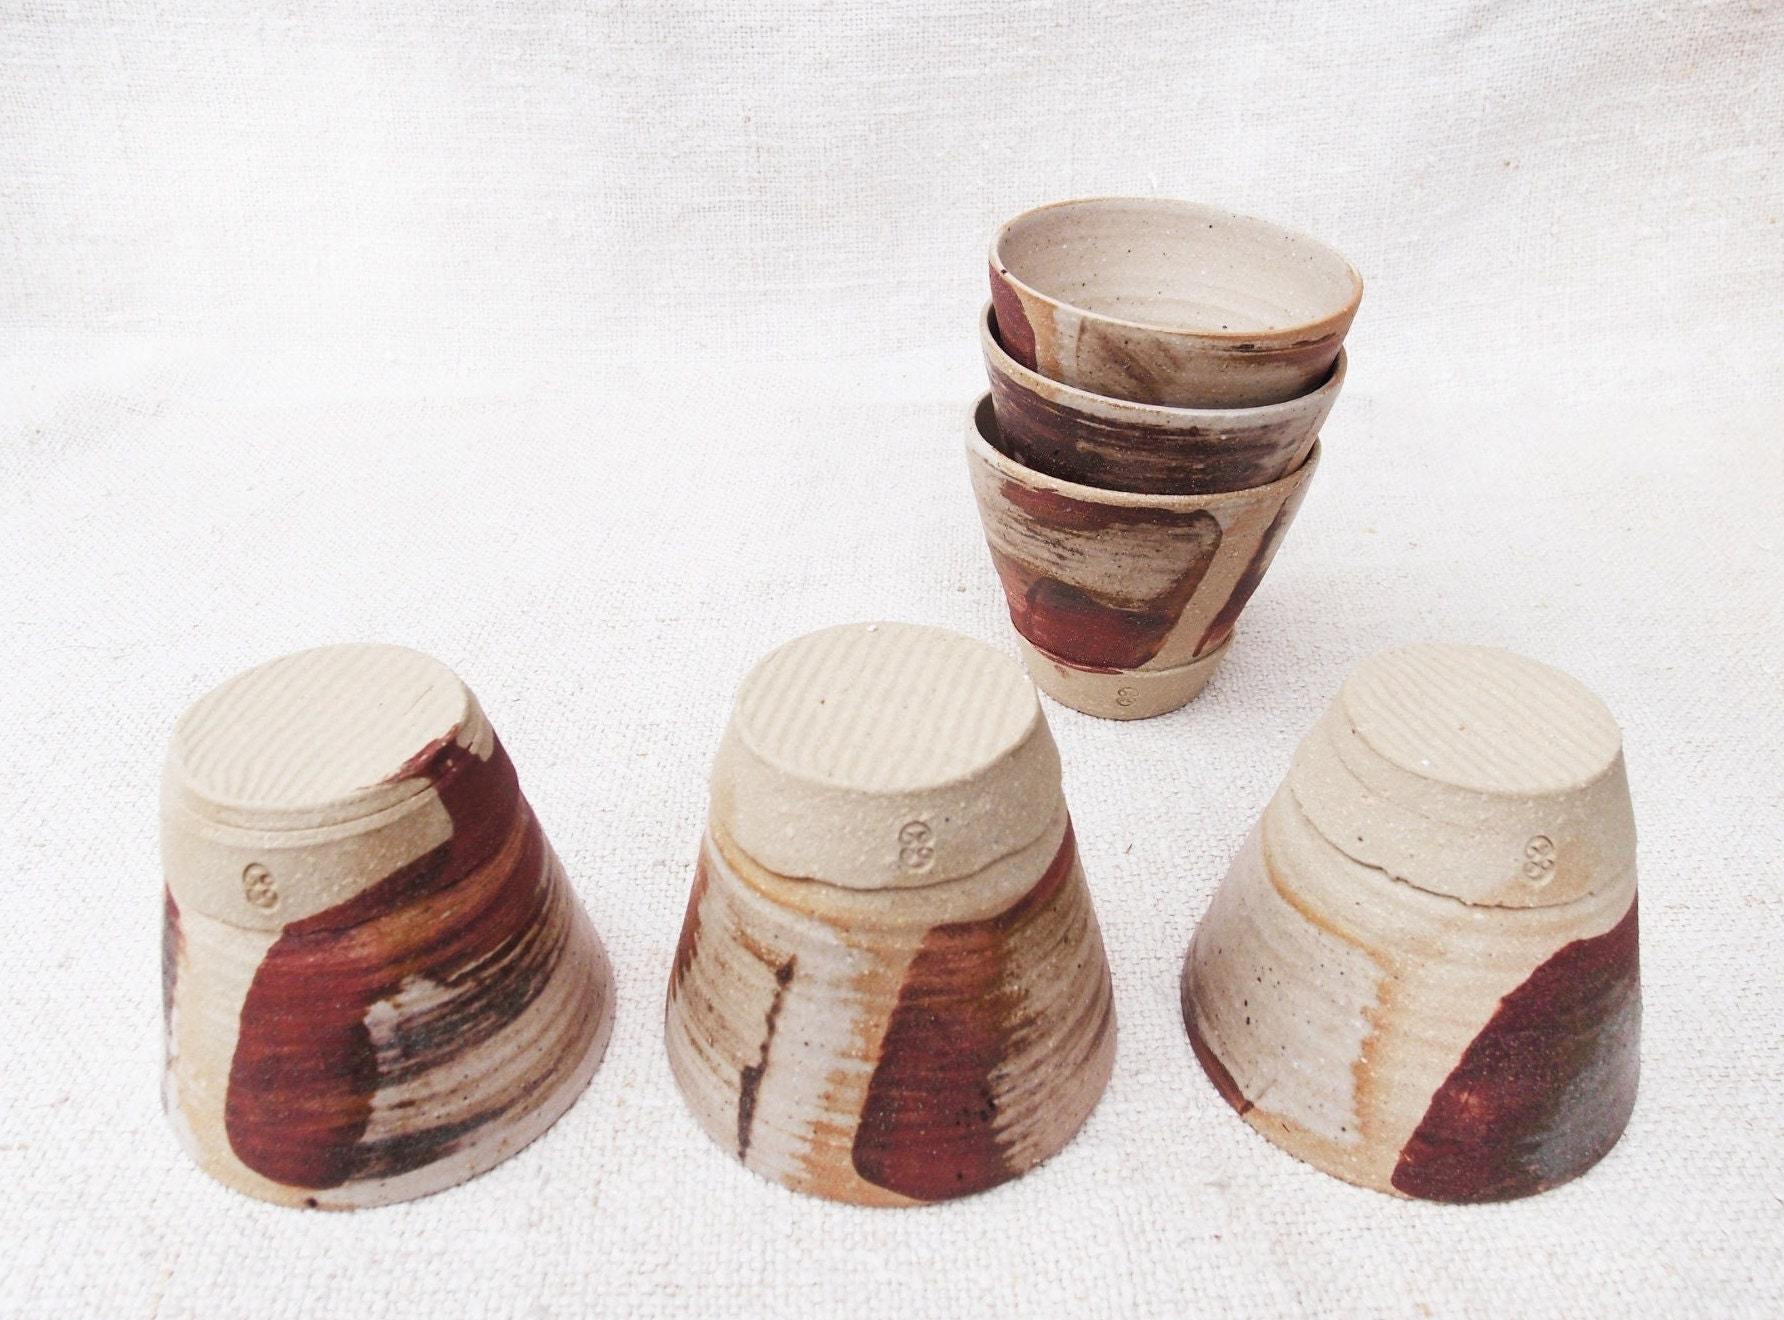 Sabine Schmidt Pottery Designer Teacup in Brown/Grey, Japanese-Inspired Teacup Devon Ceramics